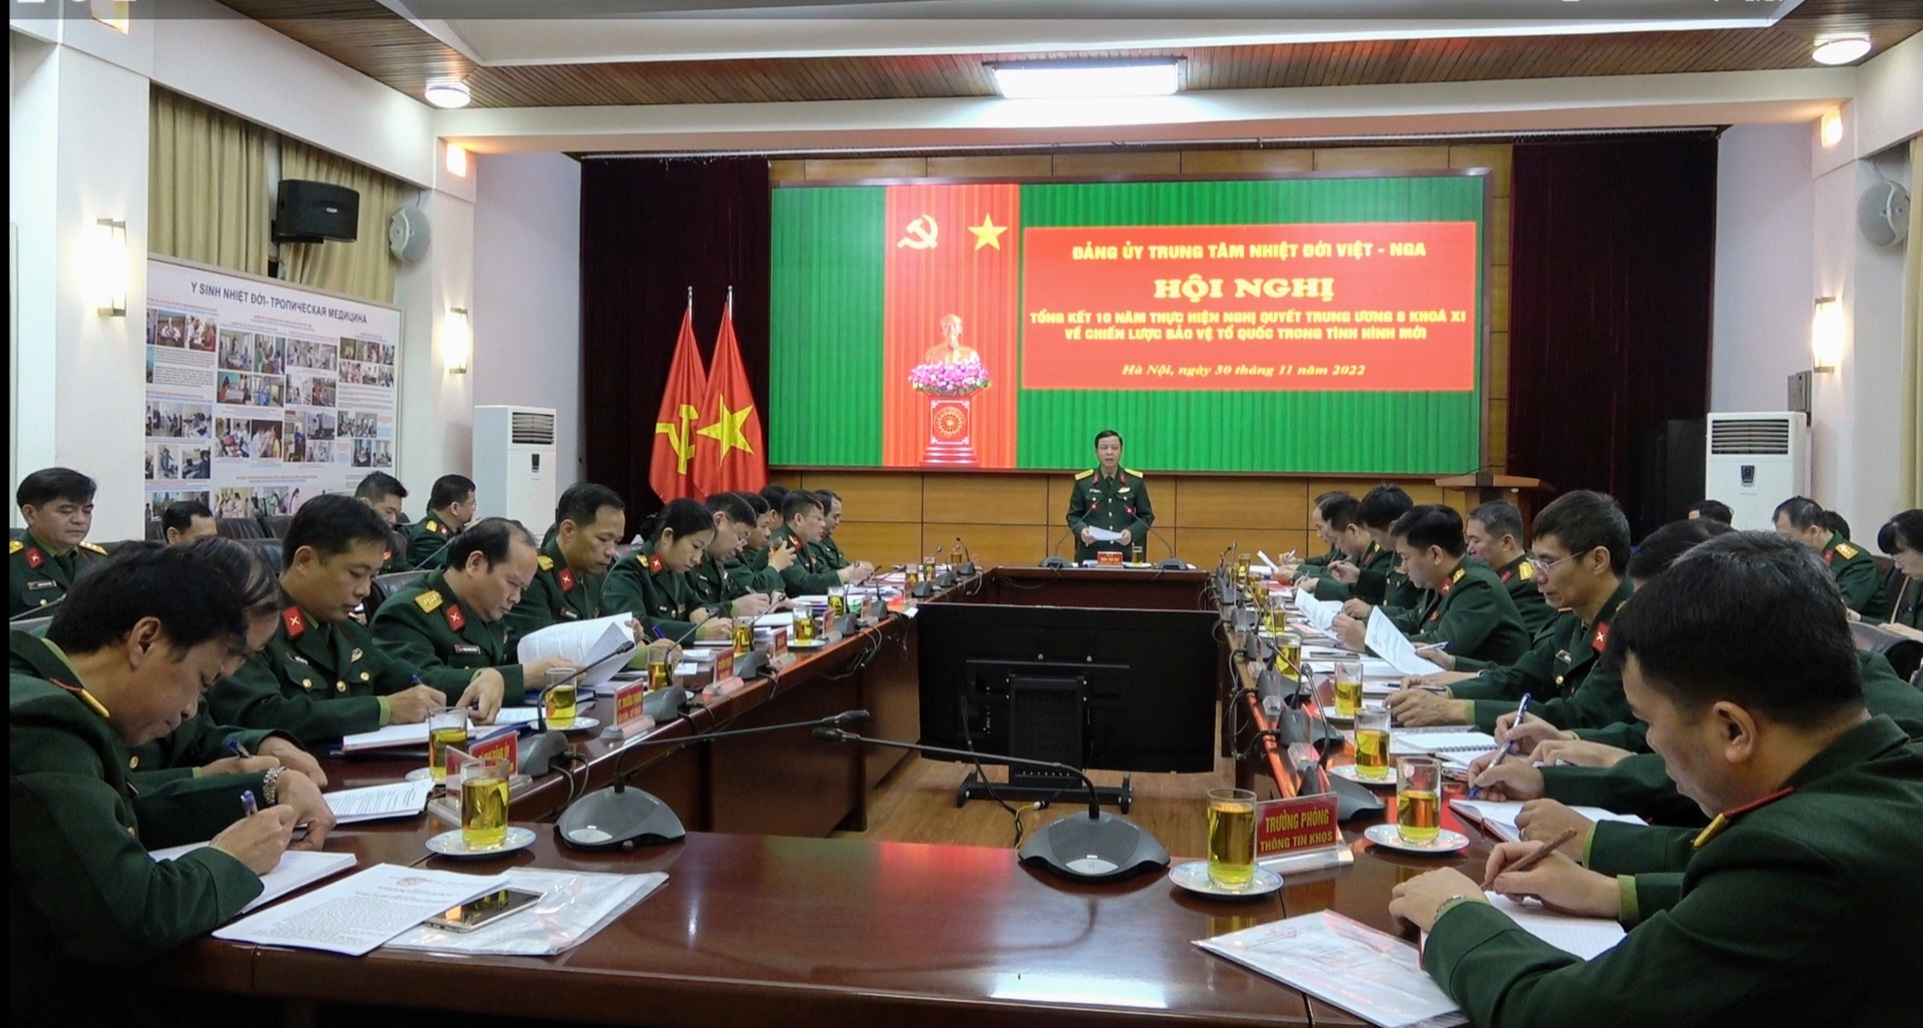 Hội nghị Đảng uỷ Trung tâm Nhiệt đới Việt - Nga tổng kết 10 năm thực hiện Nghị quyết Trung ương 8 khoá XI về Chiến lược bảo vệ Tổ quốc trong tình hình mới